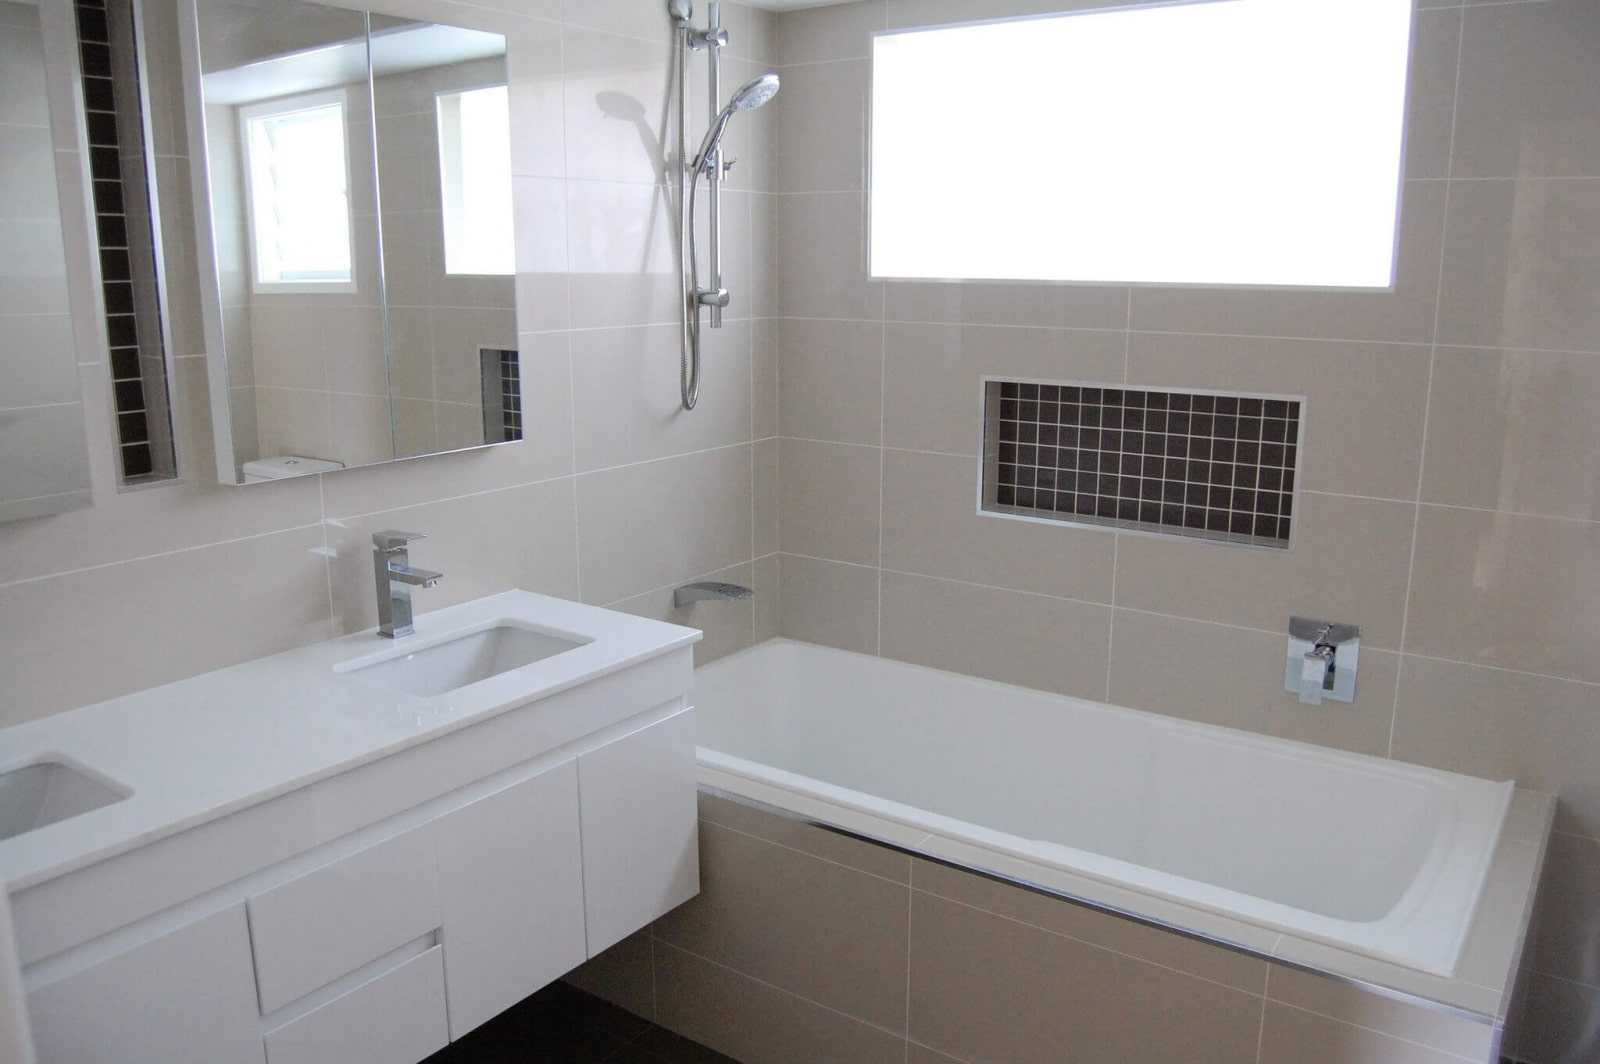 Ванная комната с окном дизайн на фото